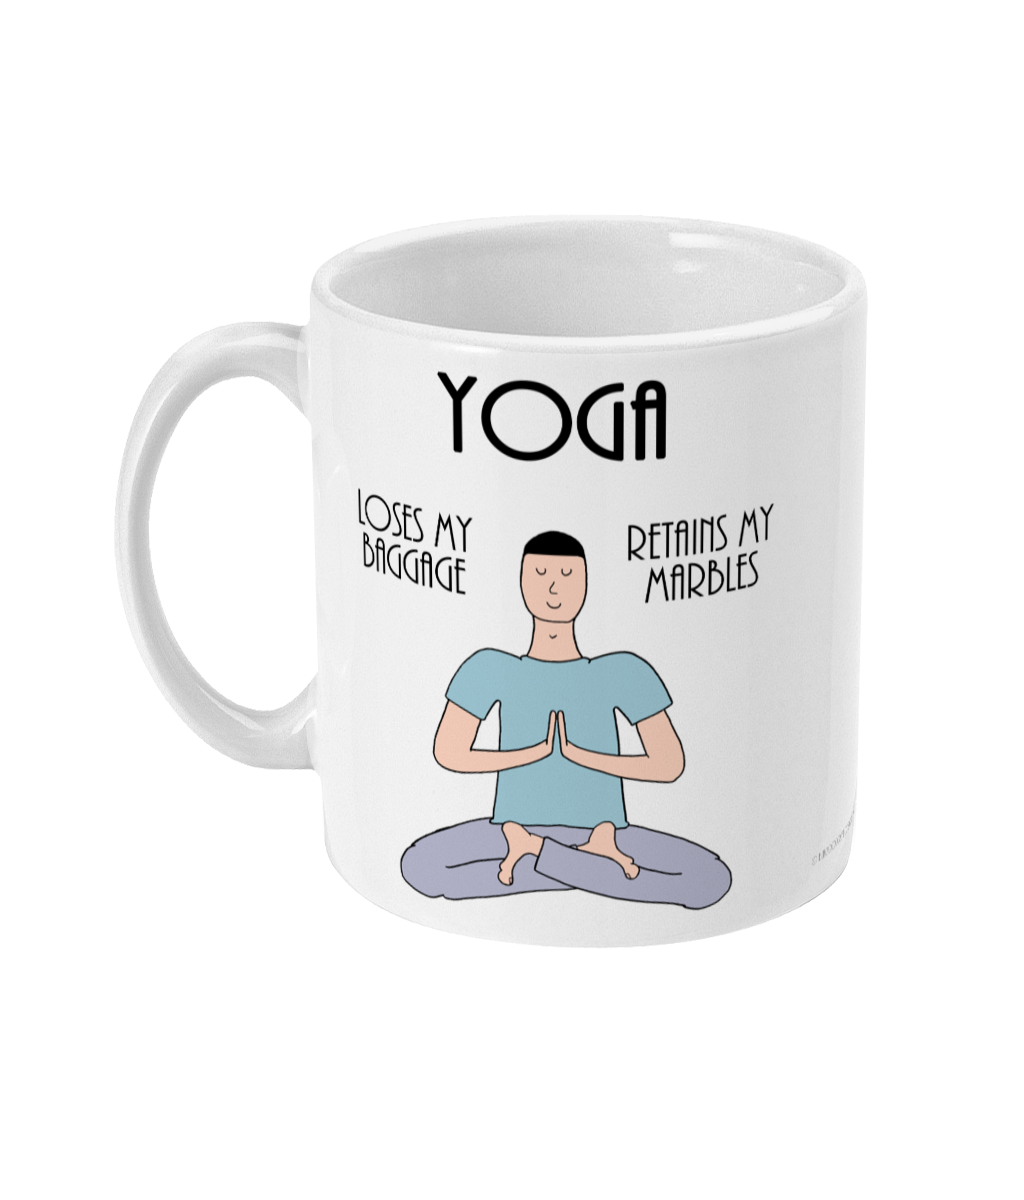 Funny Yoga Coffee Mug – Yoga Mug- Loses Baggage – Retains Marbles – Man –  11oz Ceramic